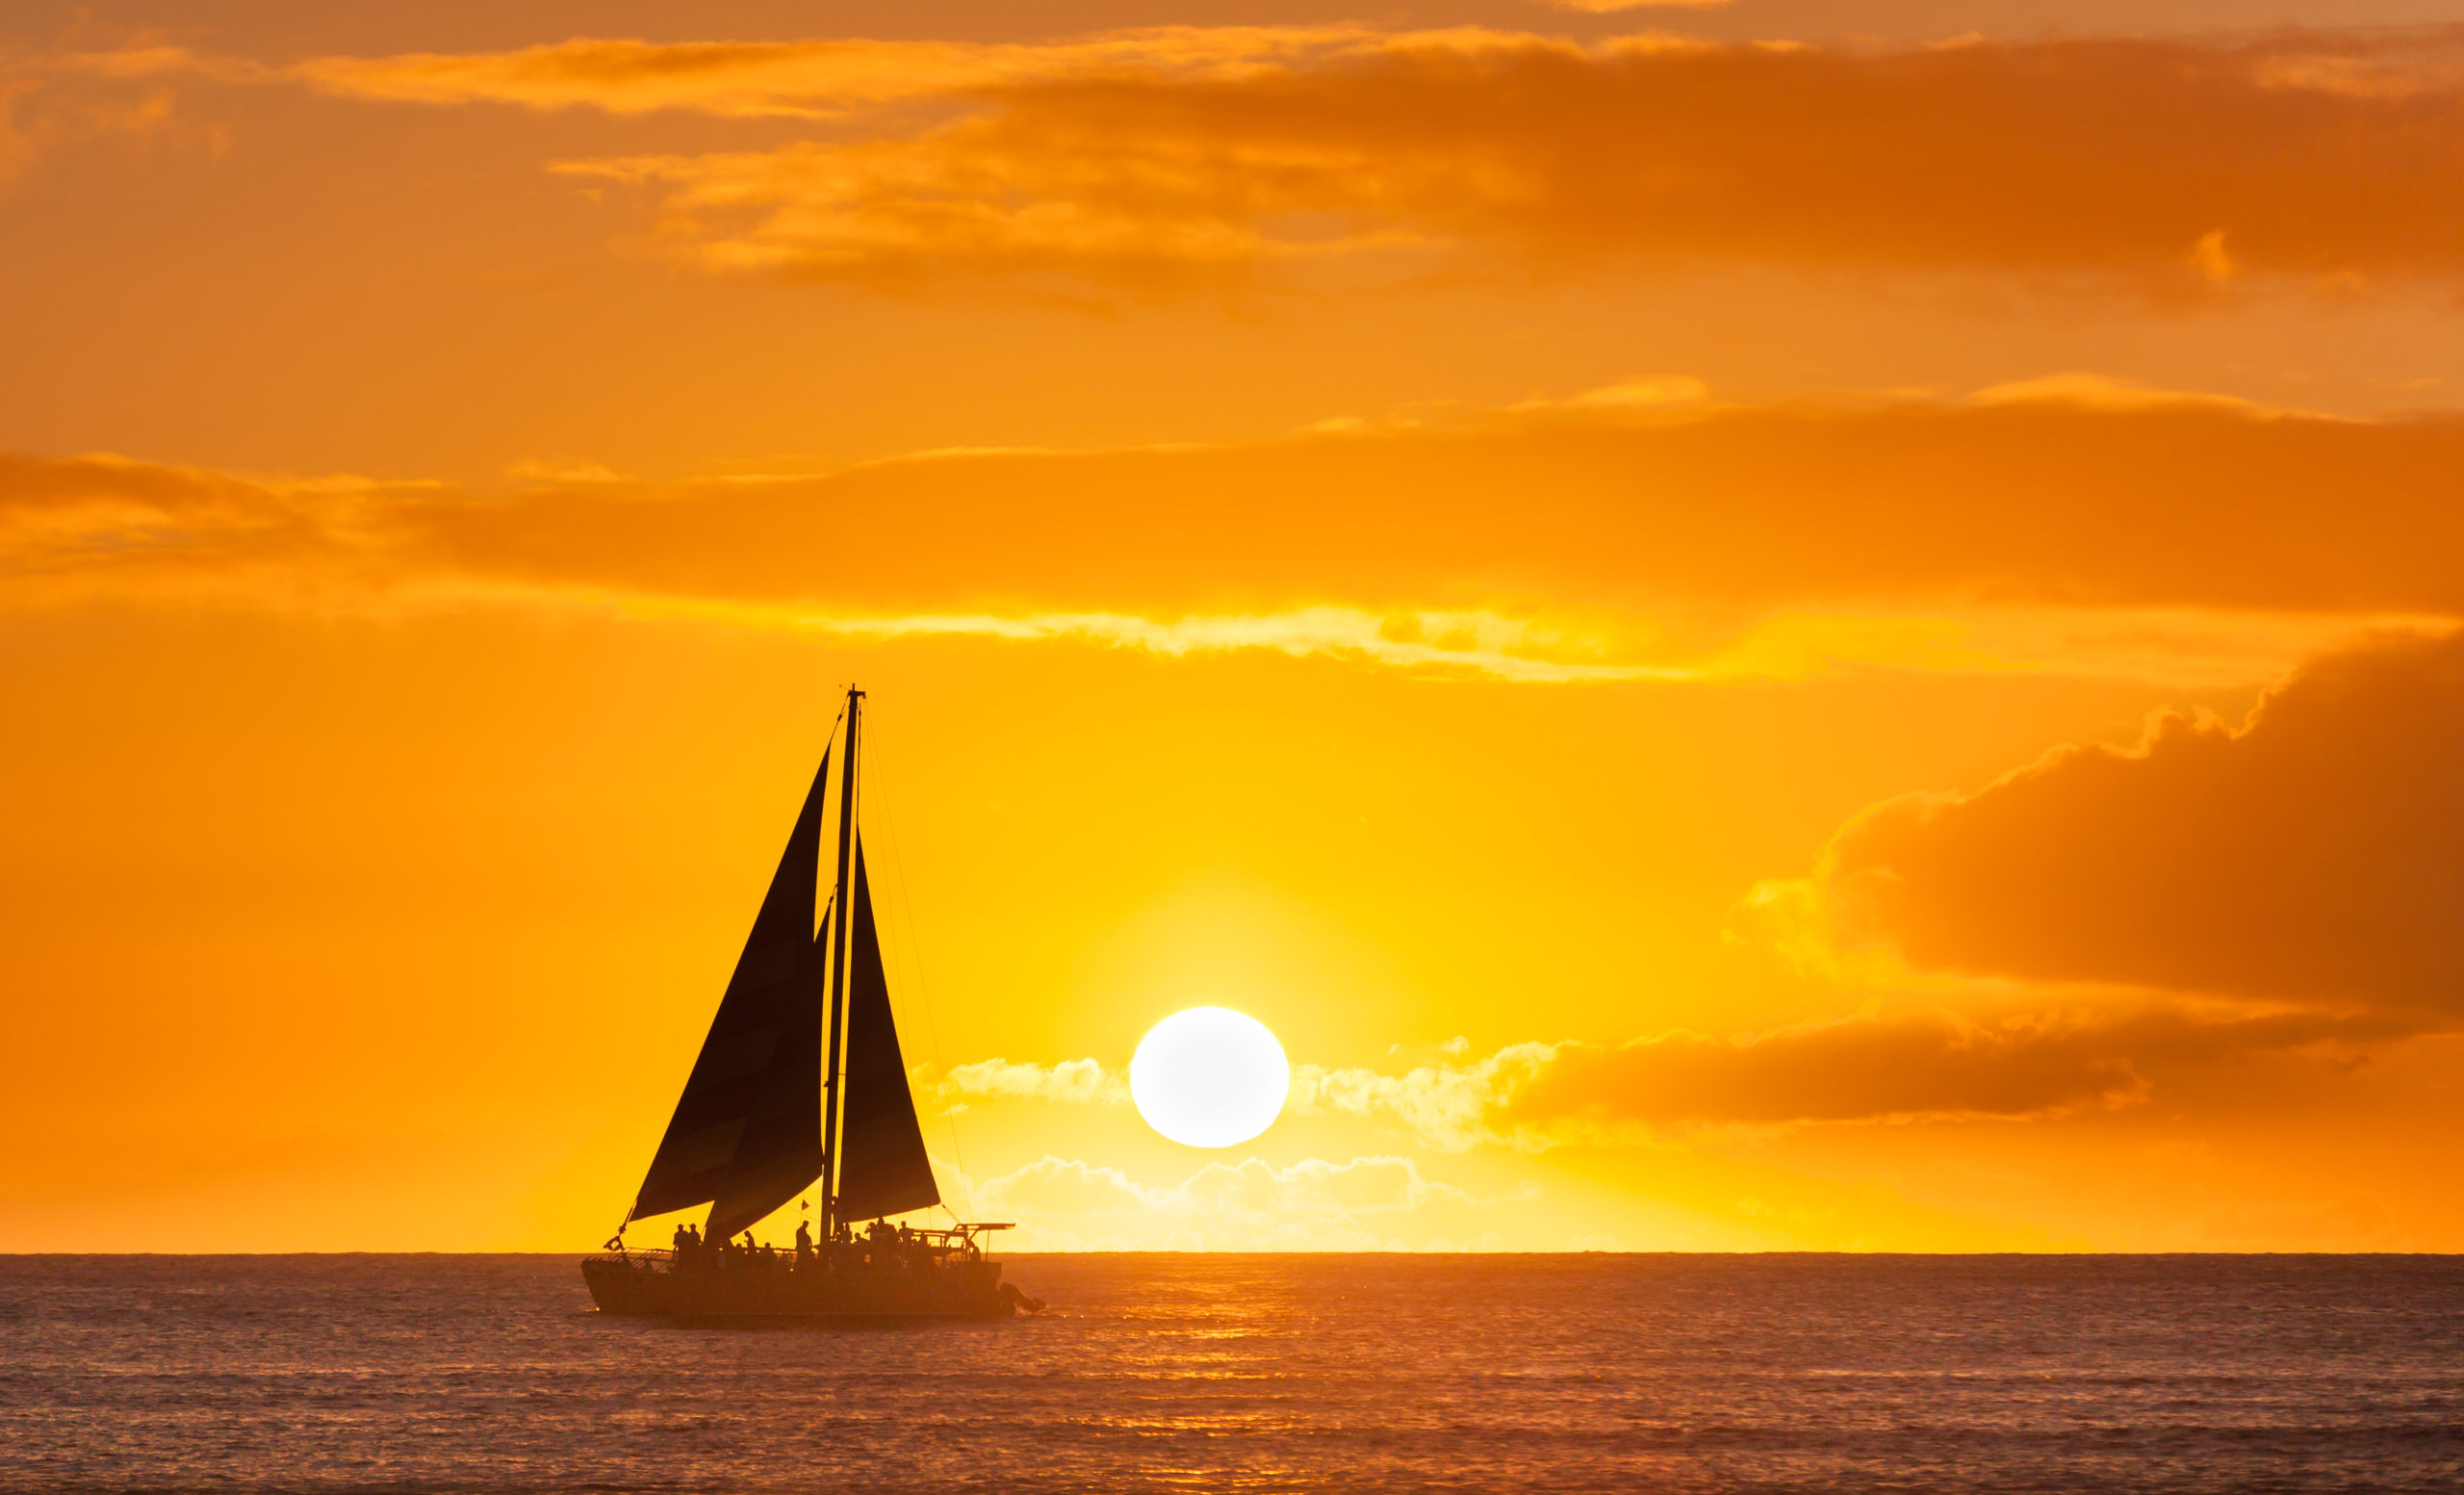 waikiki sunset catamaran